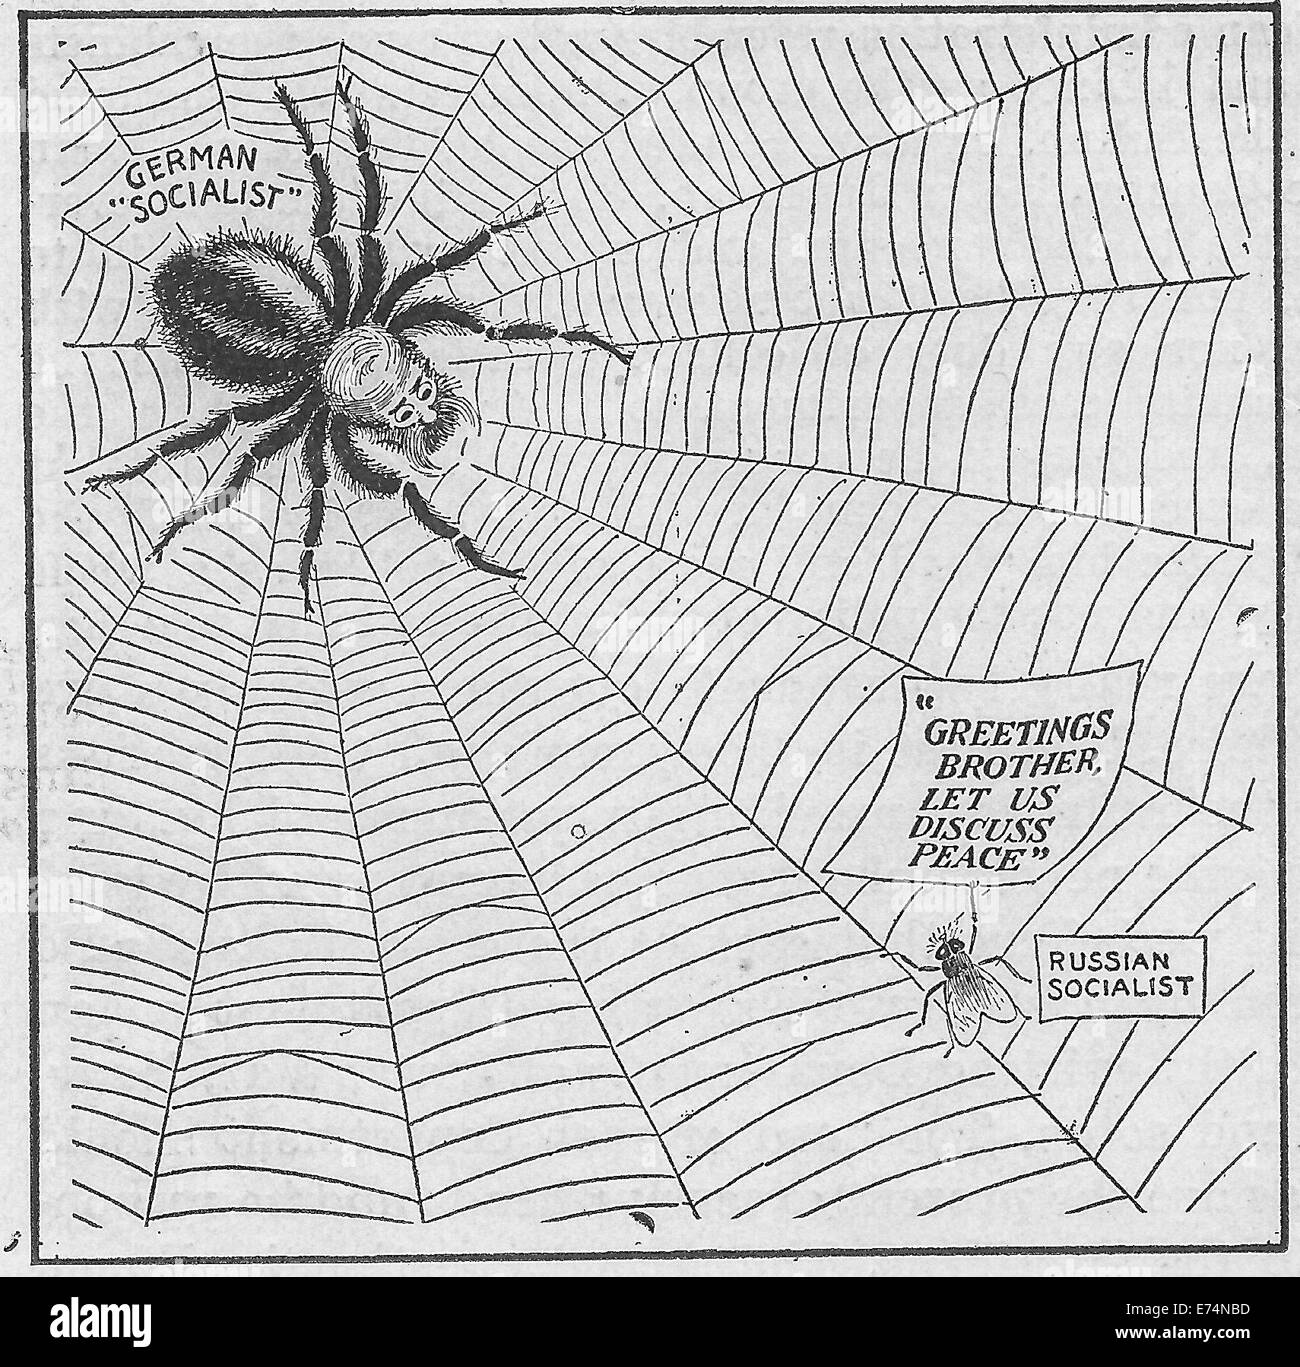 La Première Guerre mondiale, caricature politique socialistes allemands comme une araignée et socialistes russes comme une mouche. La mouche est dire "Bonjour frère, laissez-nous discuter de la paix". Circa 1917 Banque D'Images